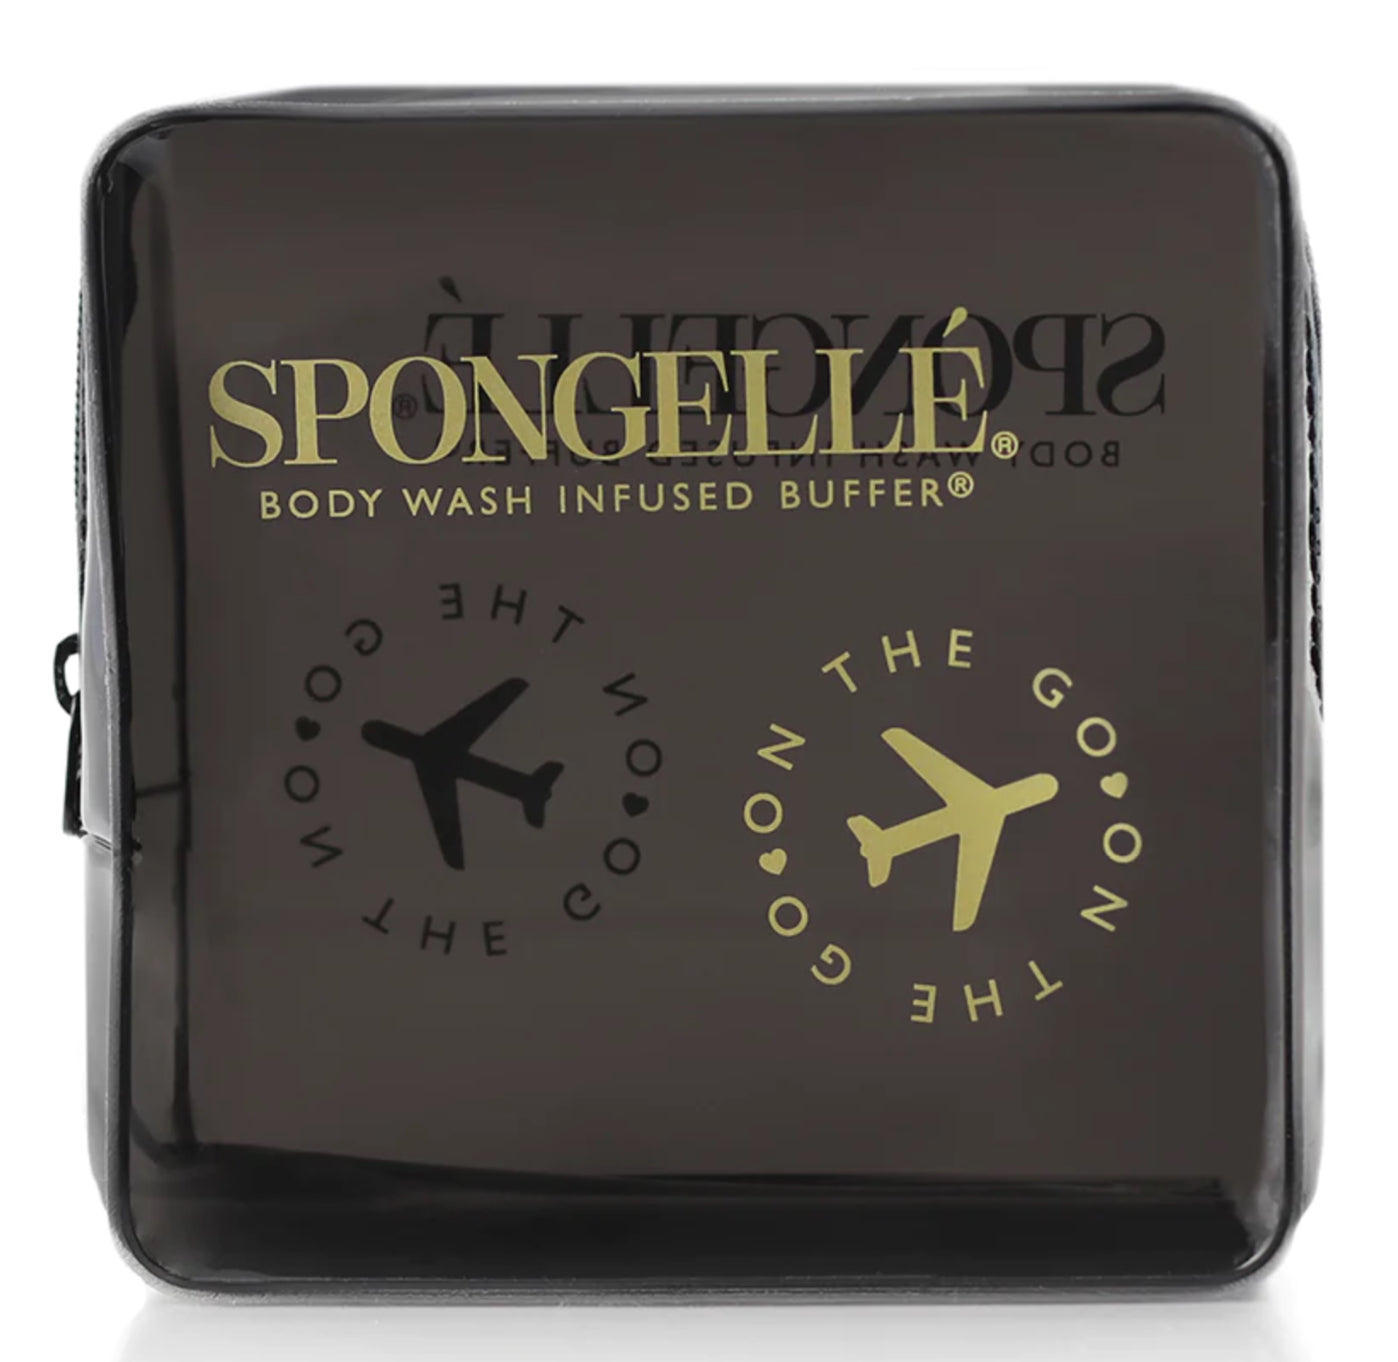 Spongelle Travel Case Black